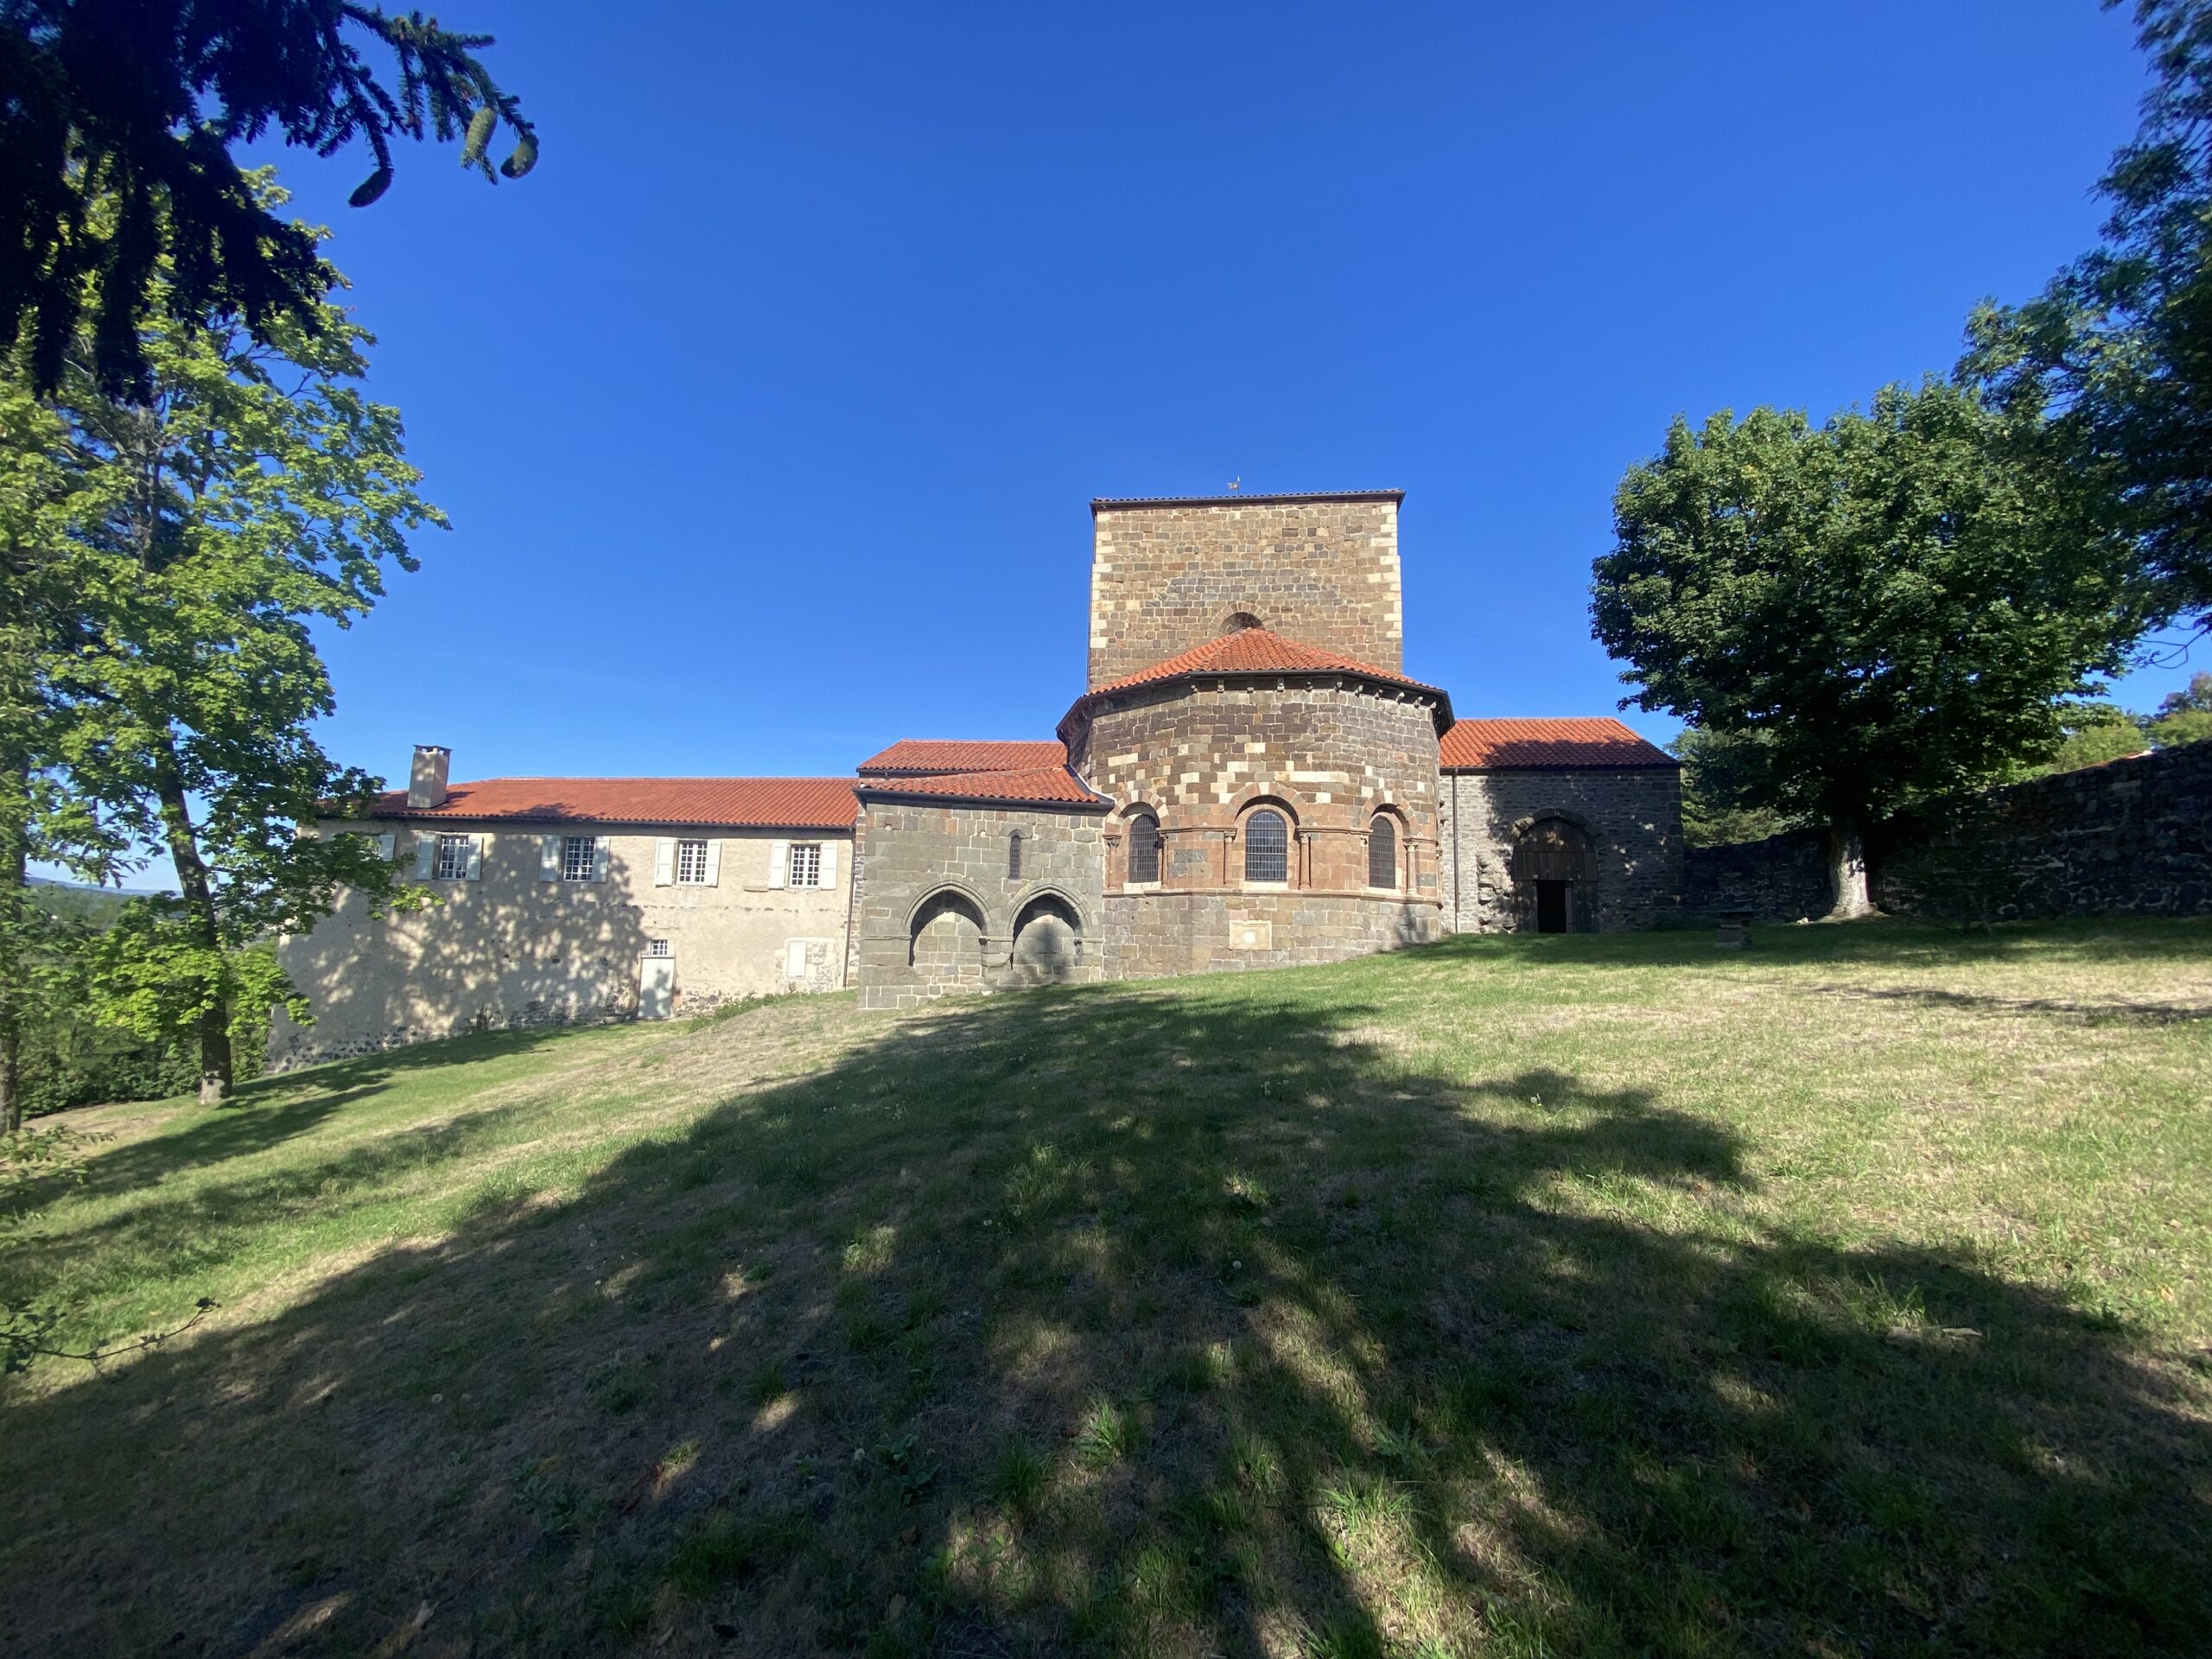 Visiter l'Abbaye de Doue avec le Passeport des Demeures Historiques